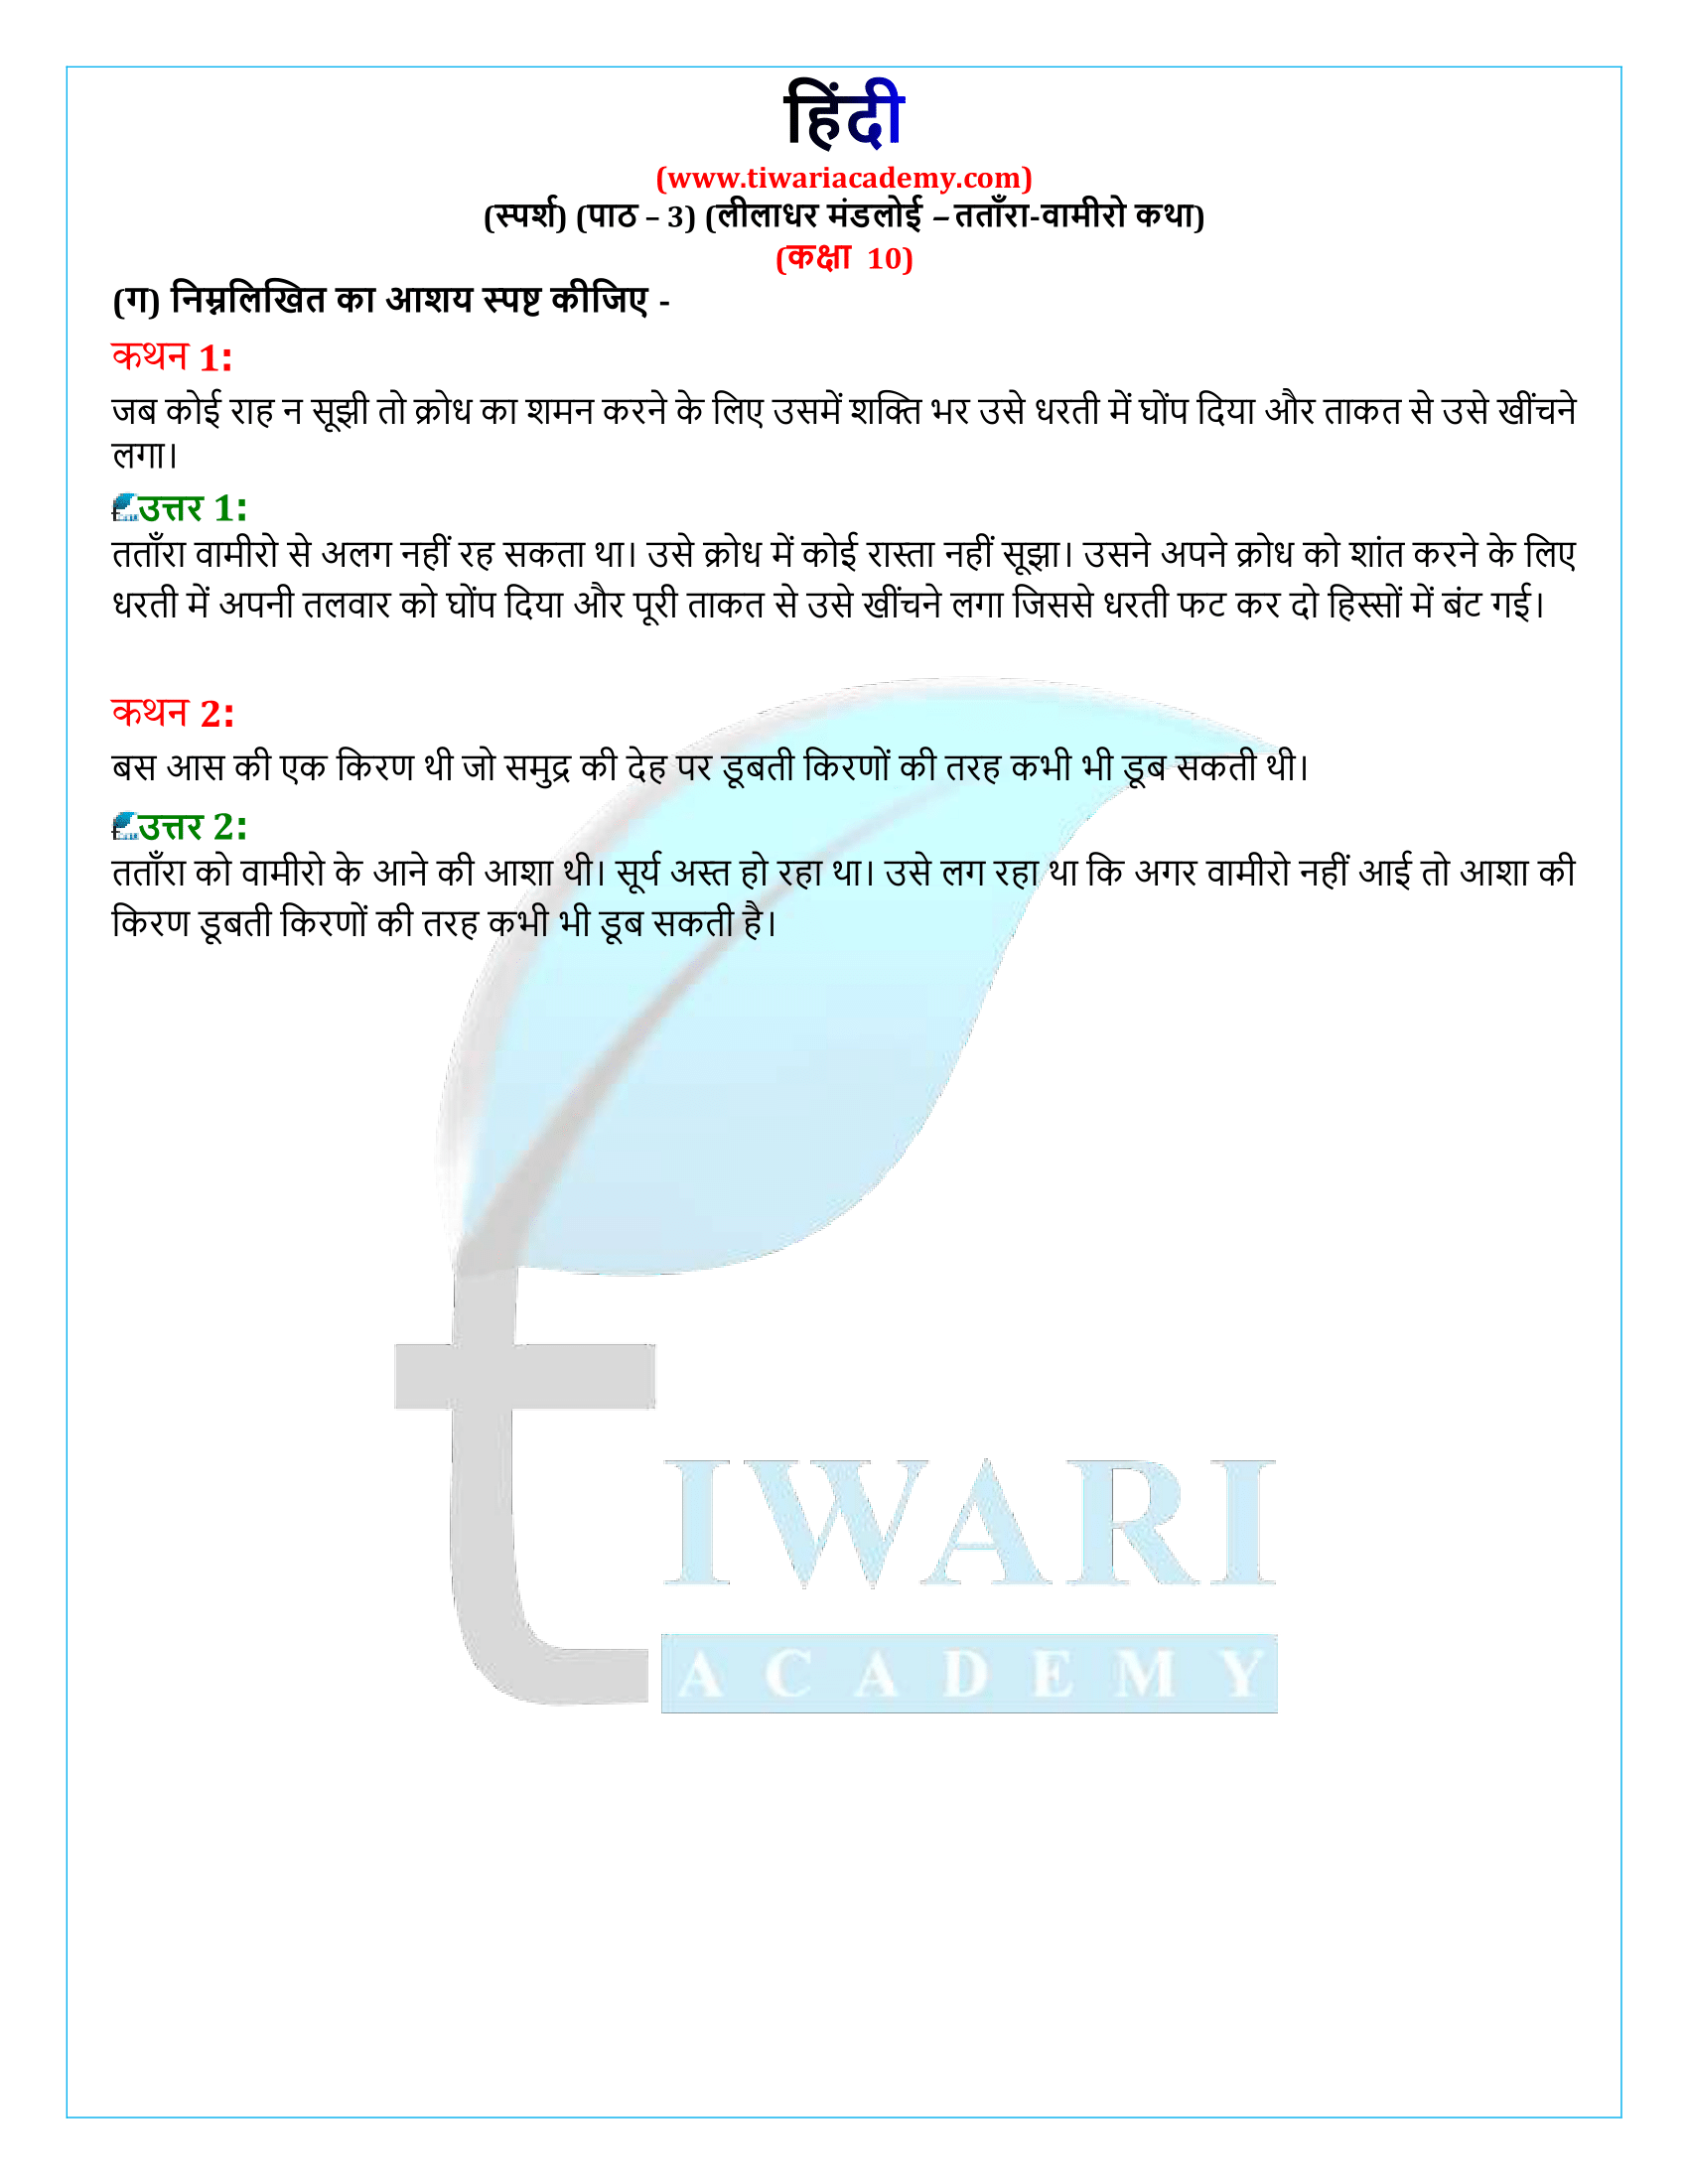 कक्षा 10 हिंदी स्पर्श गद्य खंड अध्याय 3 के प्रश्न उत्तर